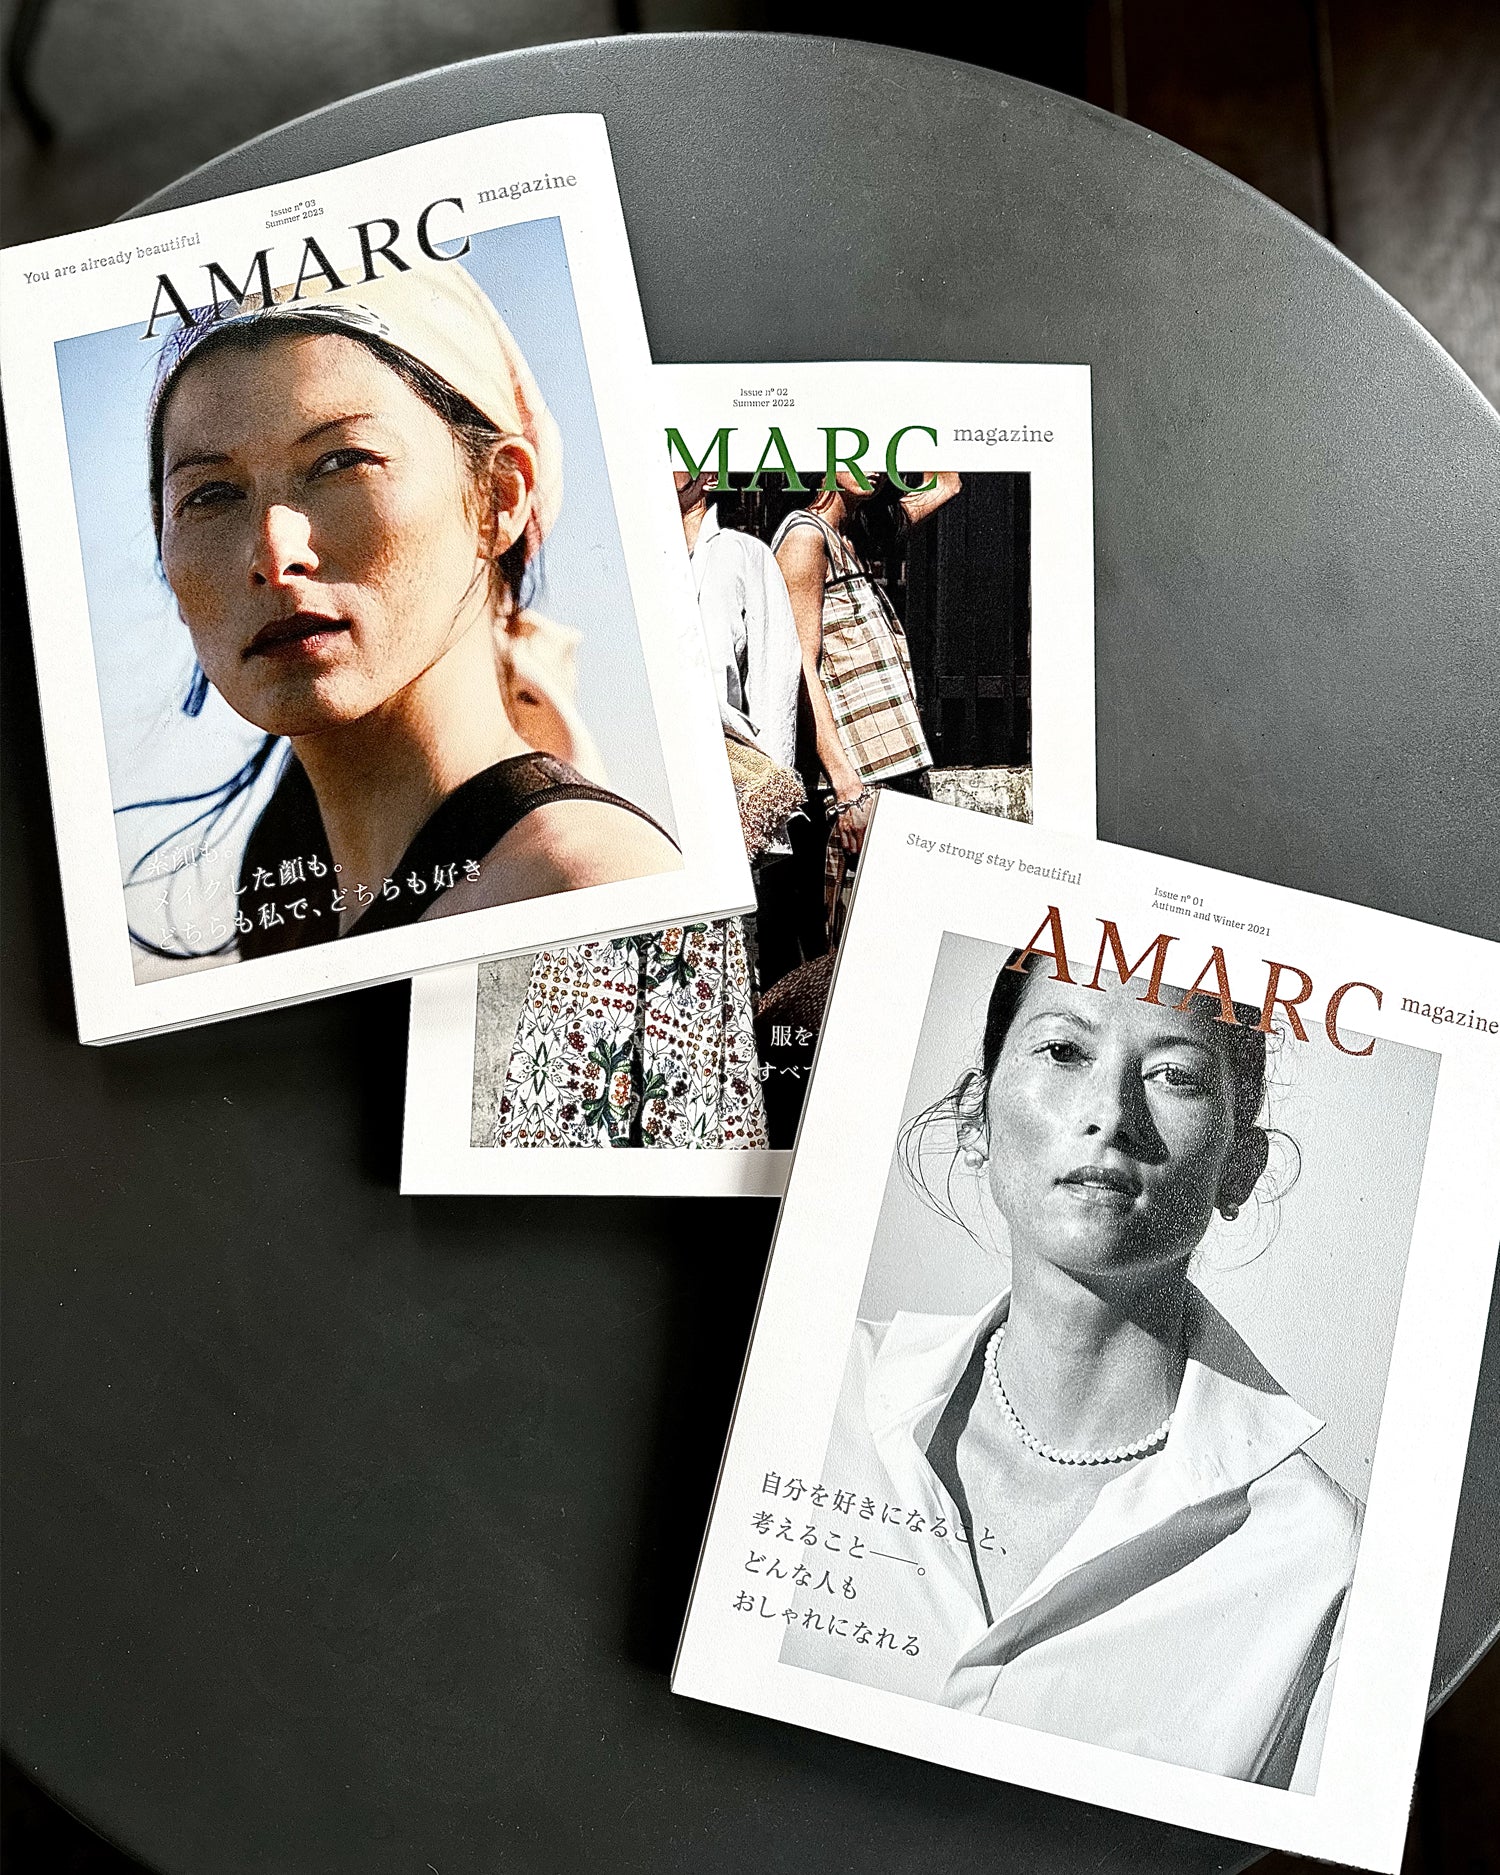 AMARC magazine Set (issue.01,02,03)